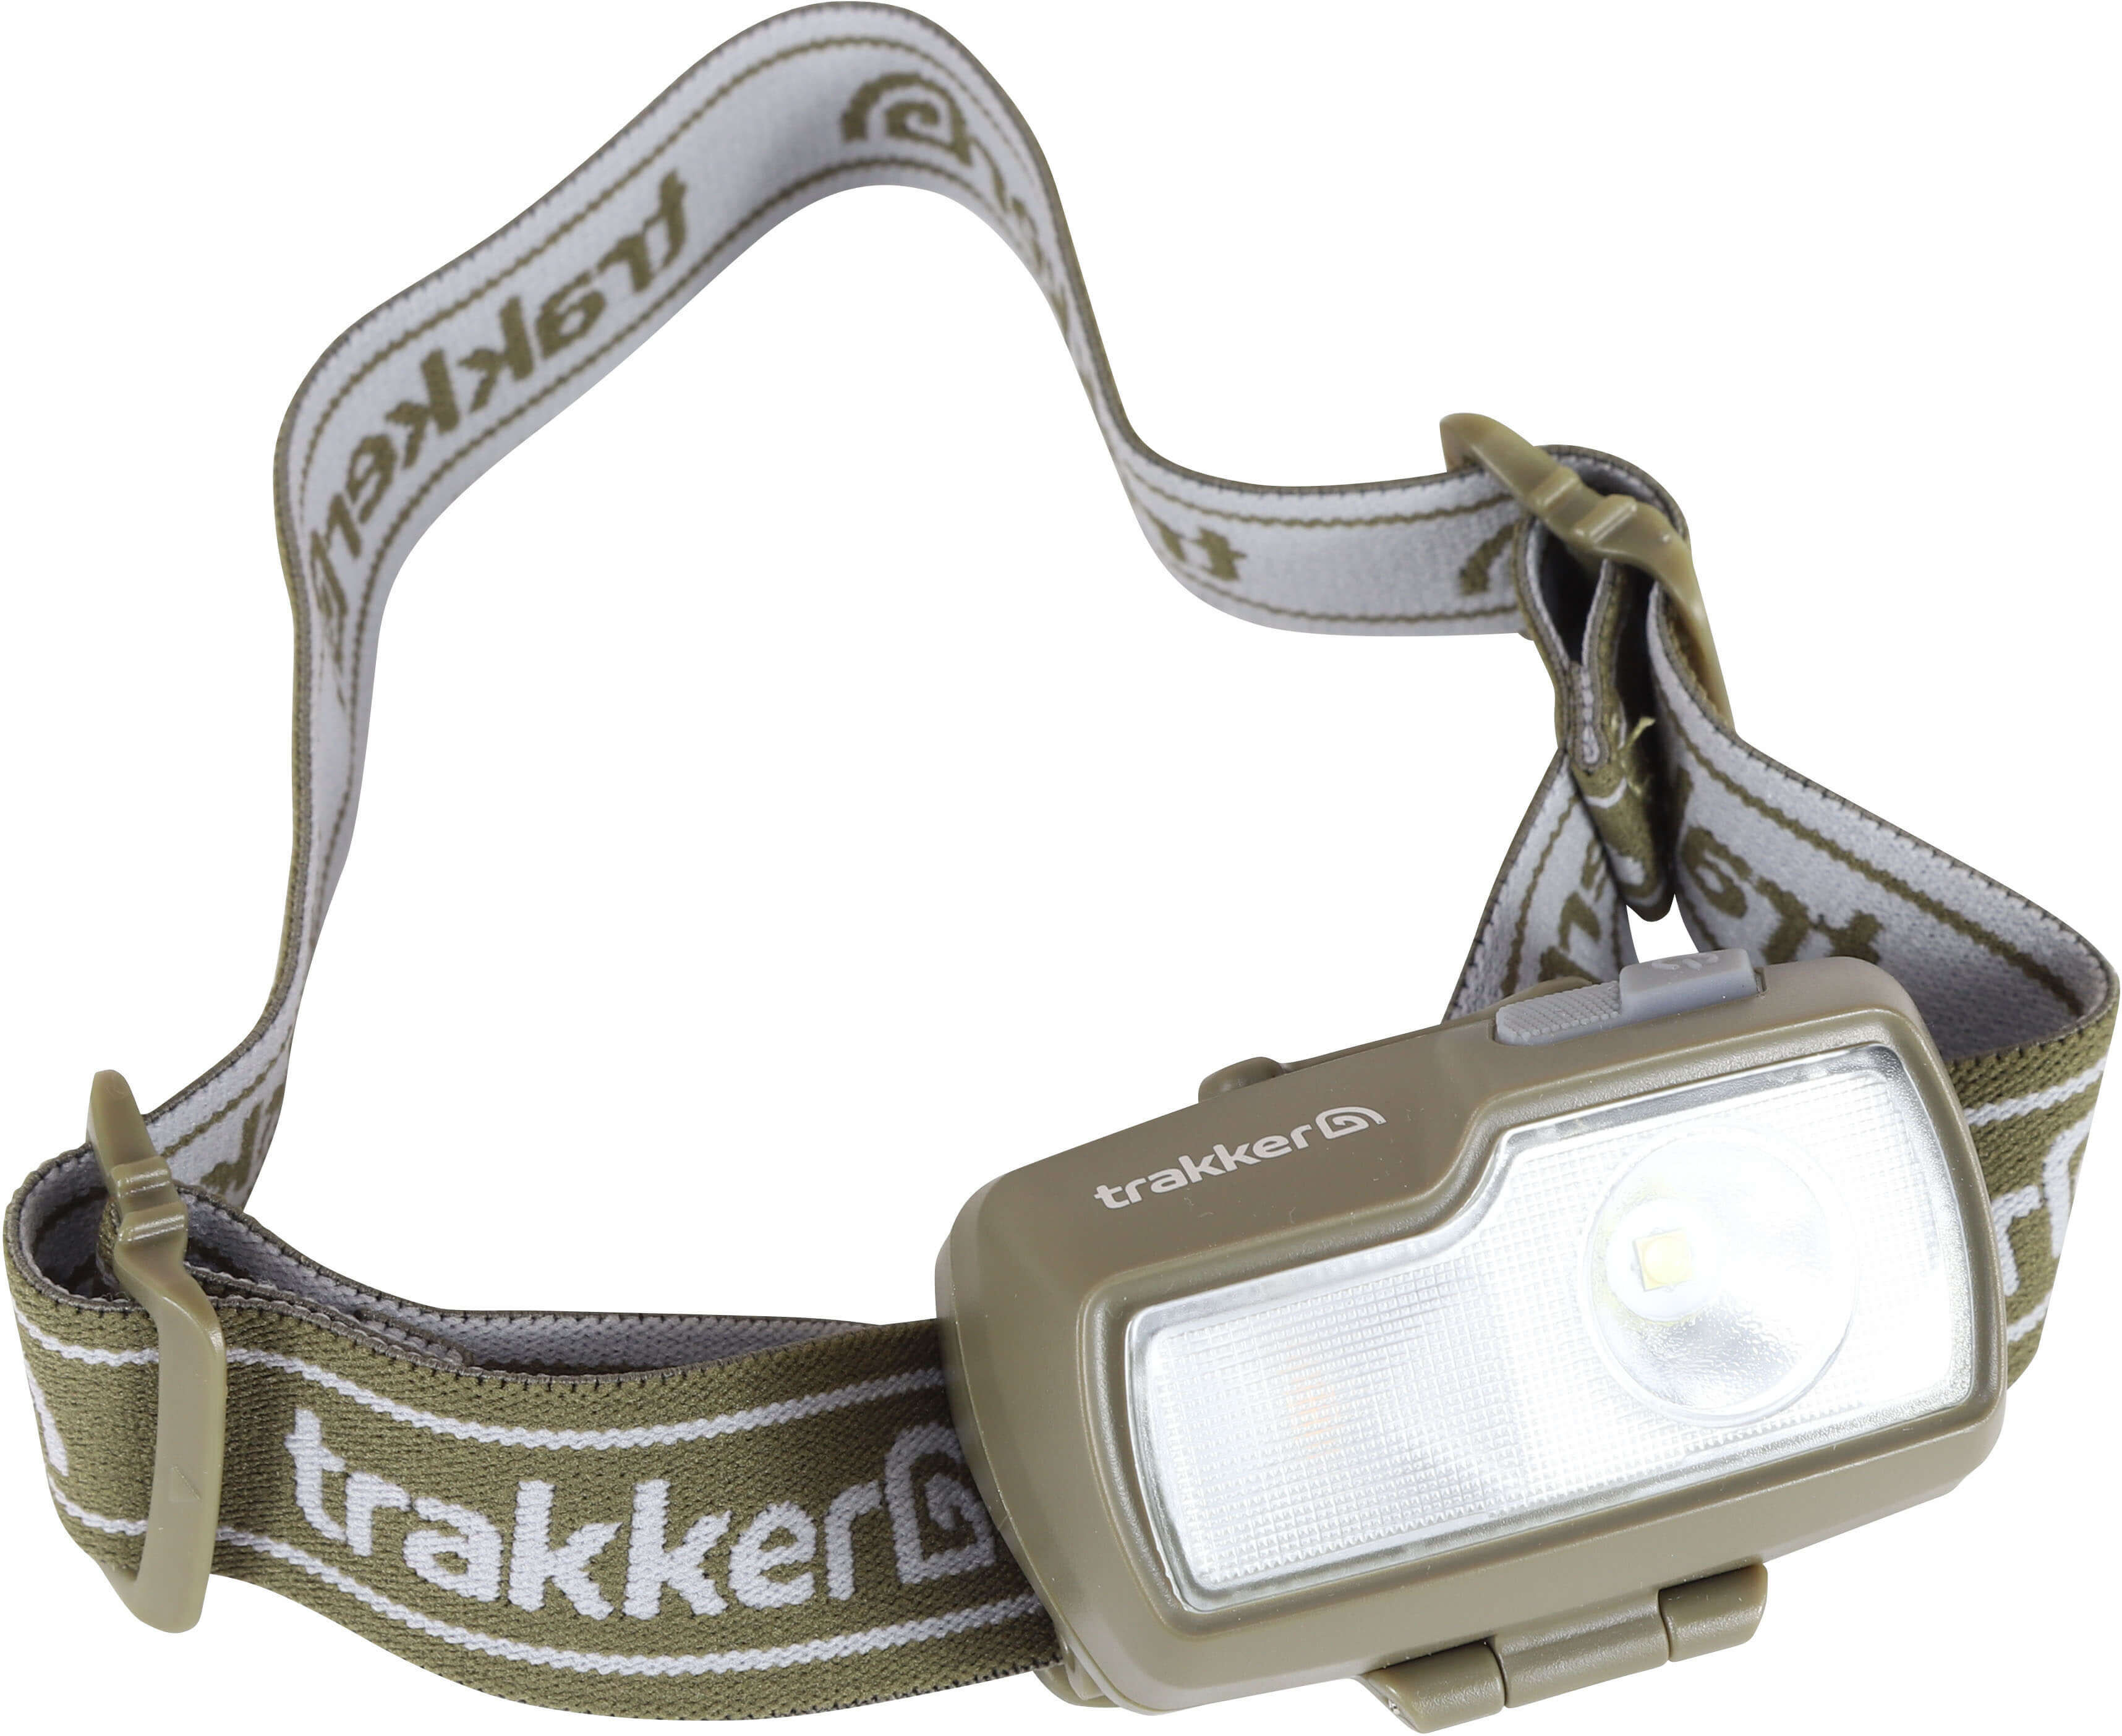 Die Trakker Kopflampe besitzt ein größenverstellbaren und robustes Stirnband.